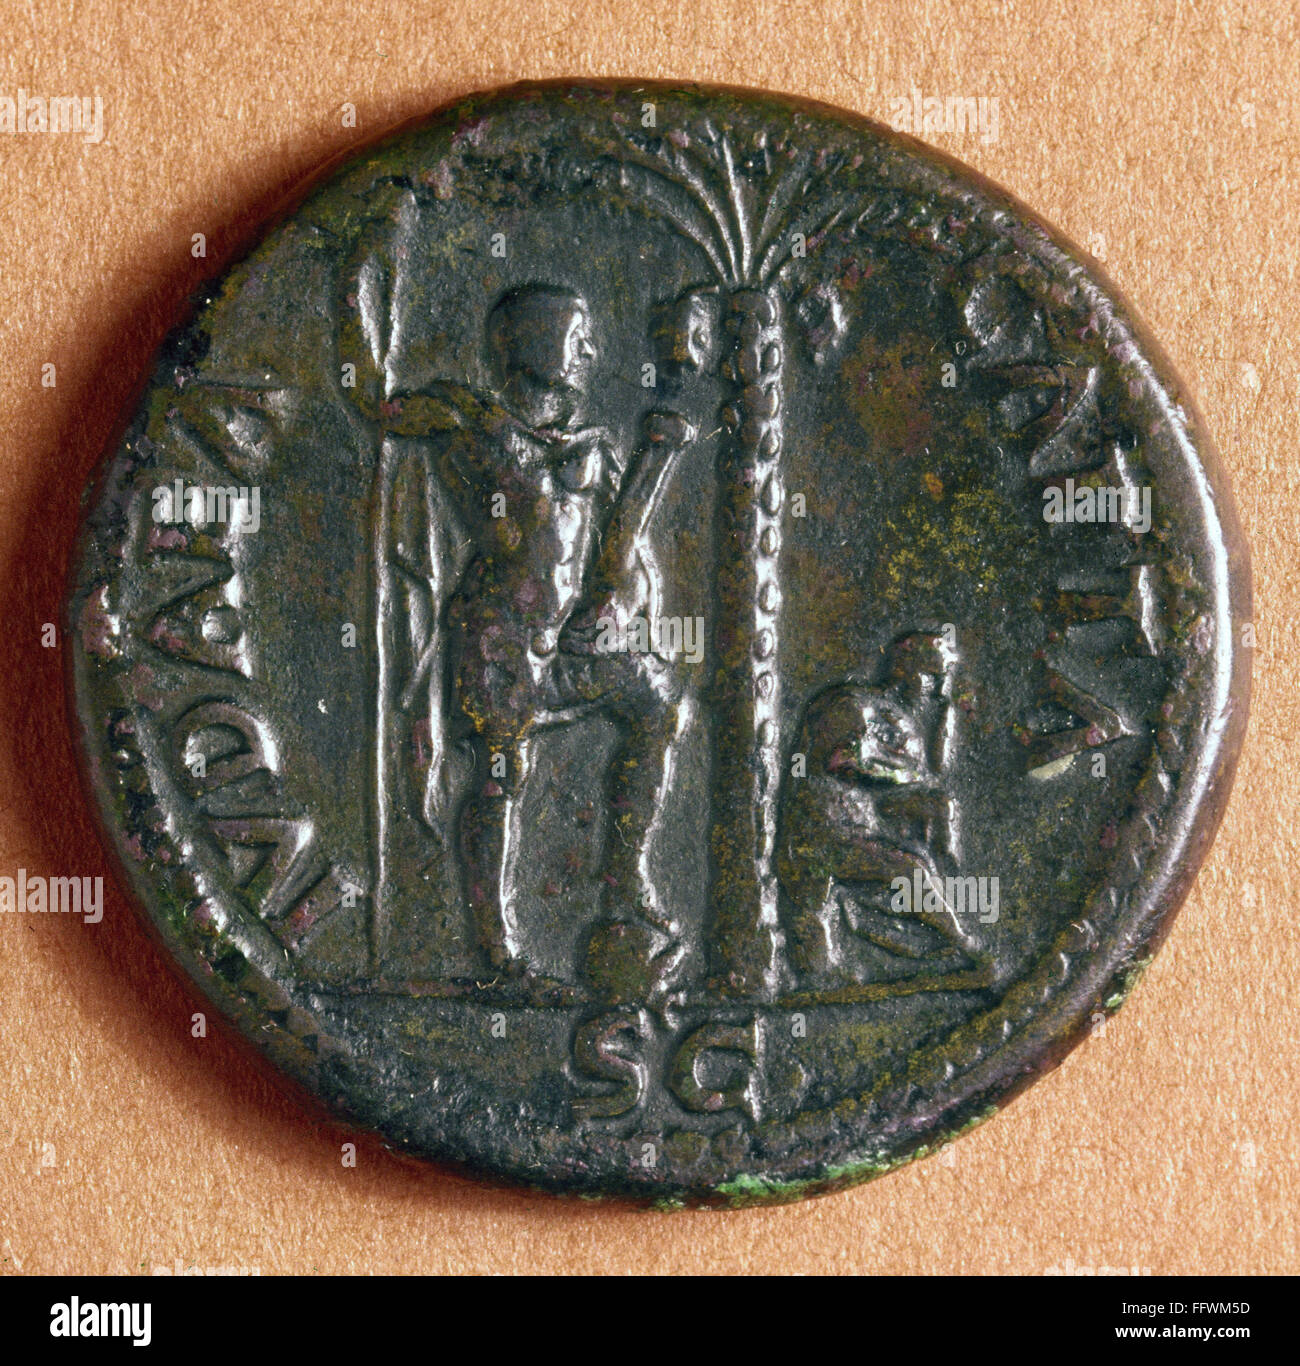 ROMAN COIN: JUDEA CAPTA. /nJudea Capta sestertius from the reign of Vespasian, 71 A.D., commemorating Rome's suppression of the Jewish Revolt. Stock Photo